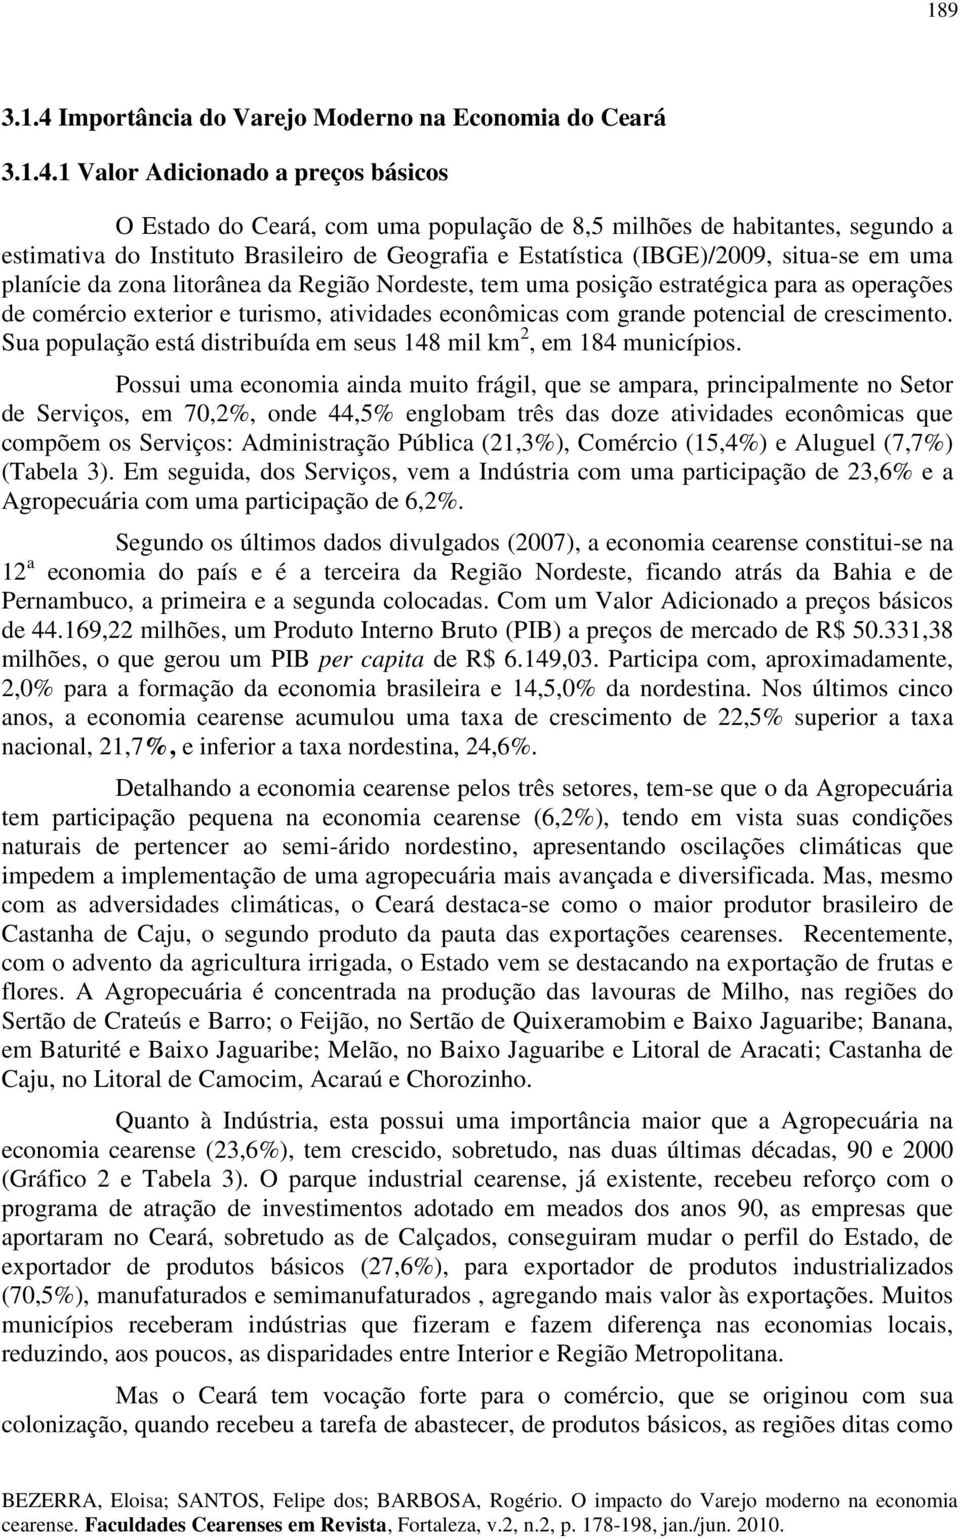 1 Valor Adconado a preços báscos O Estado do Ceará, com uma população de 8,5 mlhões de habtantes, segundo a estmatva do Insttuto Braslero de Geografa e Estatístca (IBGE)/2009, stua-se em uma planíce